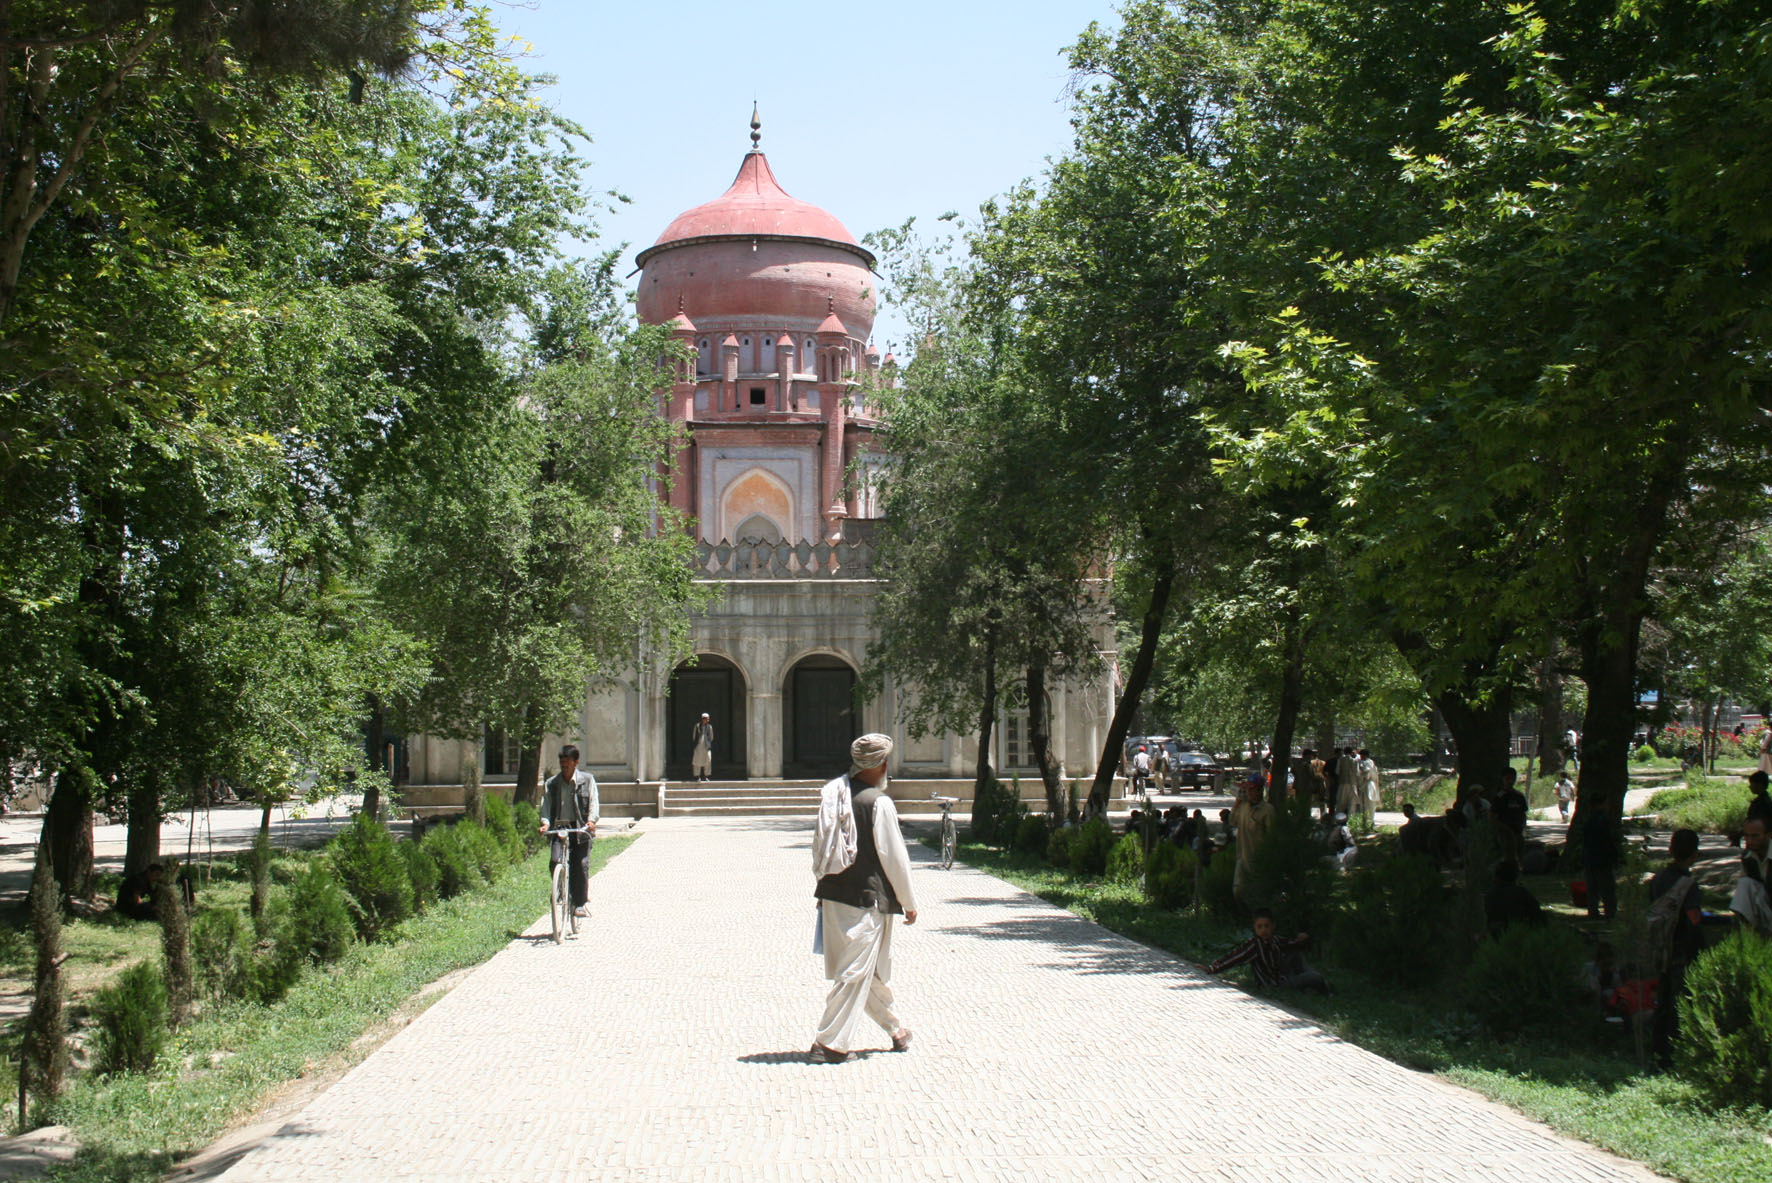 Main axis through the Park to Amir 'Abd al-Rahman Mausoleum (also restored by the Aga Khan Trust for Culture)